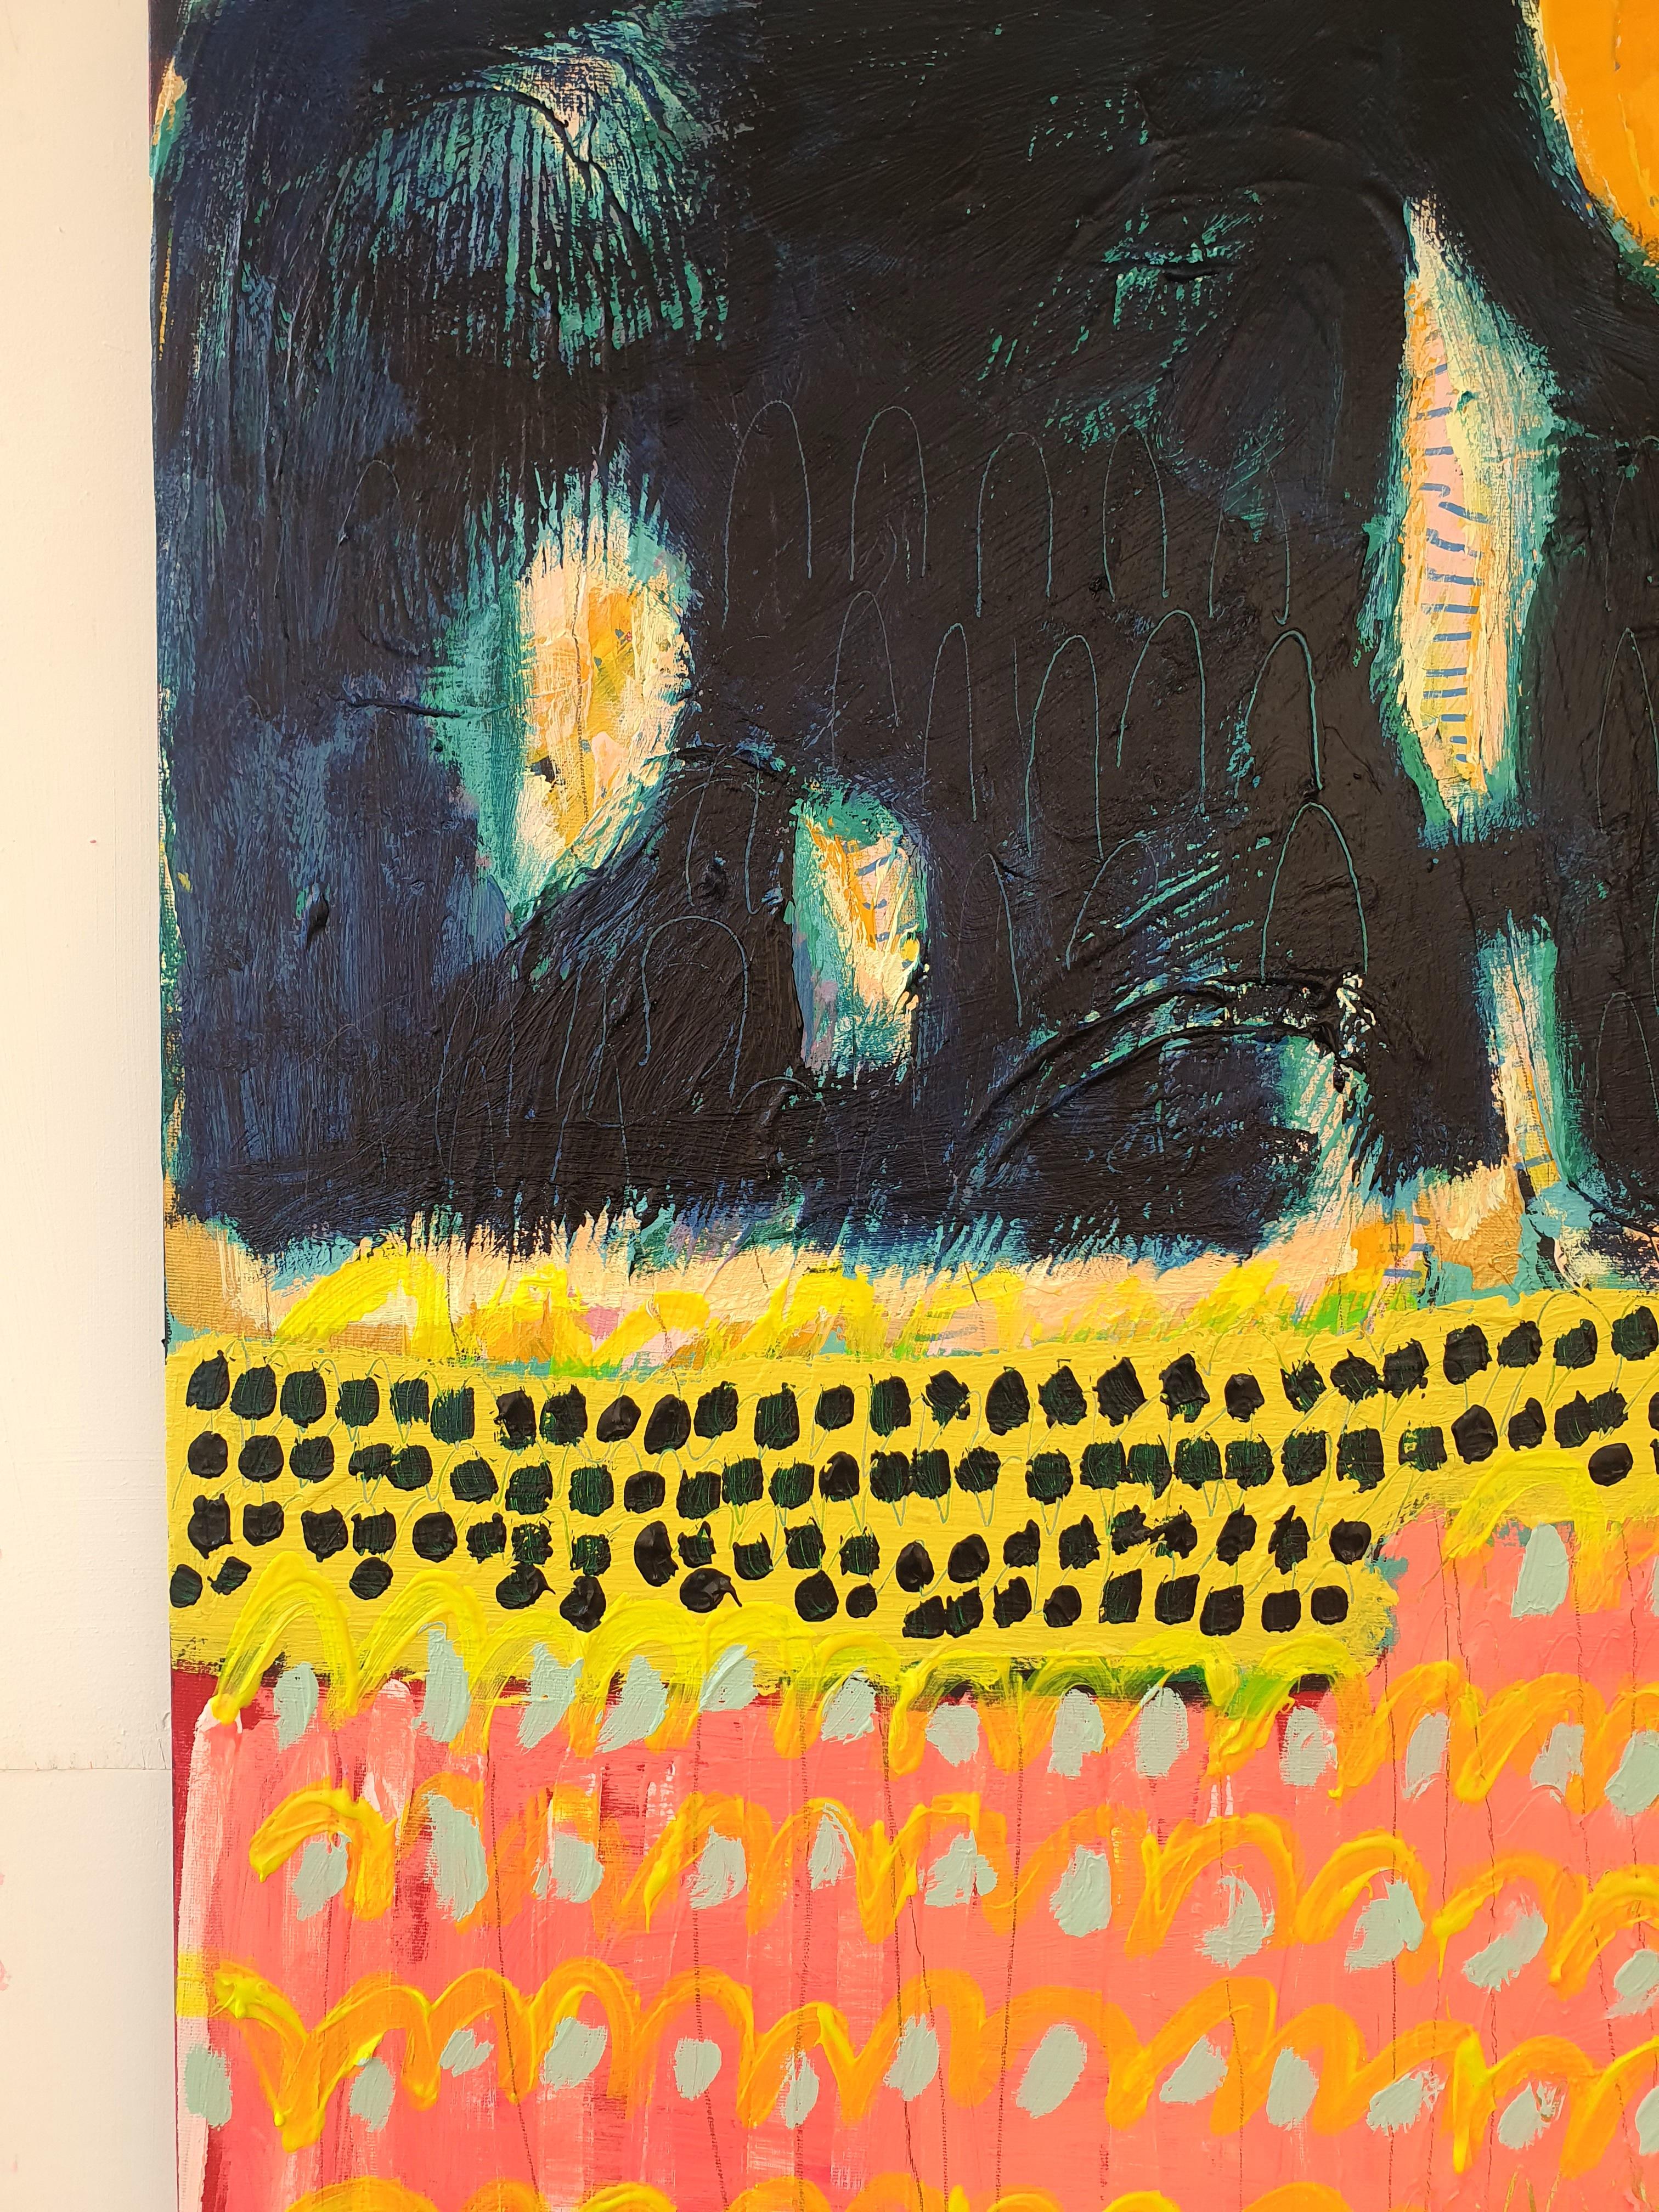 Peinture abstraite originale explorant le langage de la peinture et de la couleur.

Informations complémentaires :
#607
Jessie Woodward
Peinture abstraite originale
Peinture à l'acrylique
Vendu sans cadre
90 H x 90 L x 5 P cm (35,43 x 35,43 x 1,97